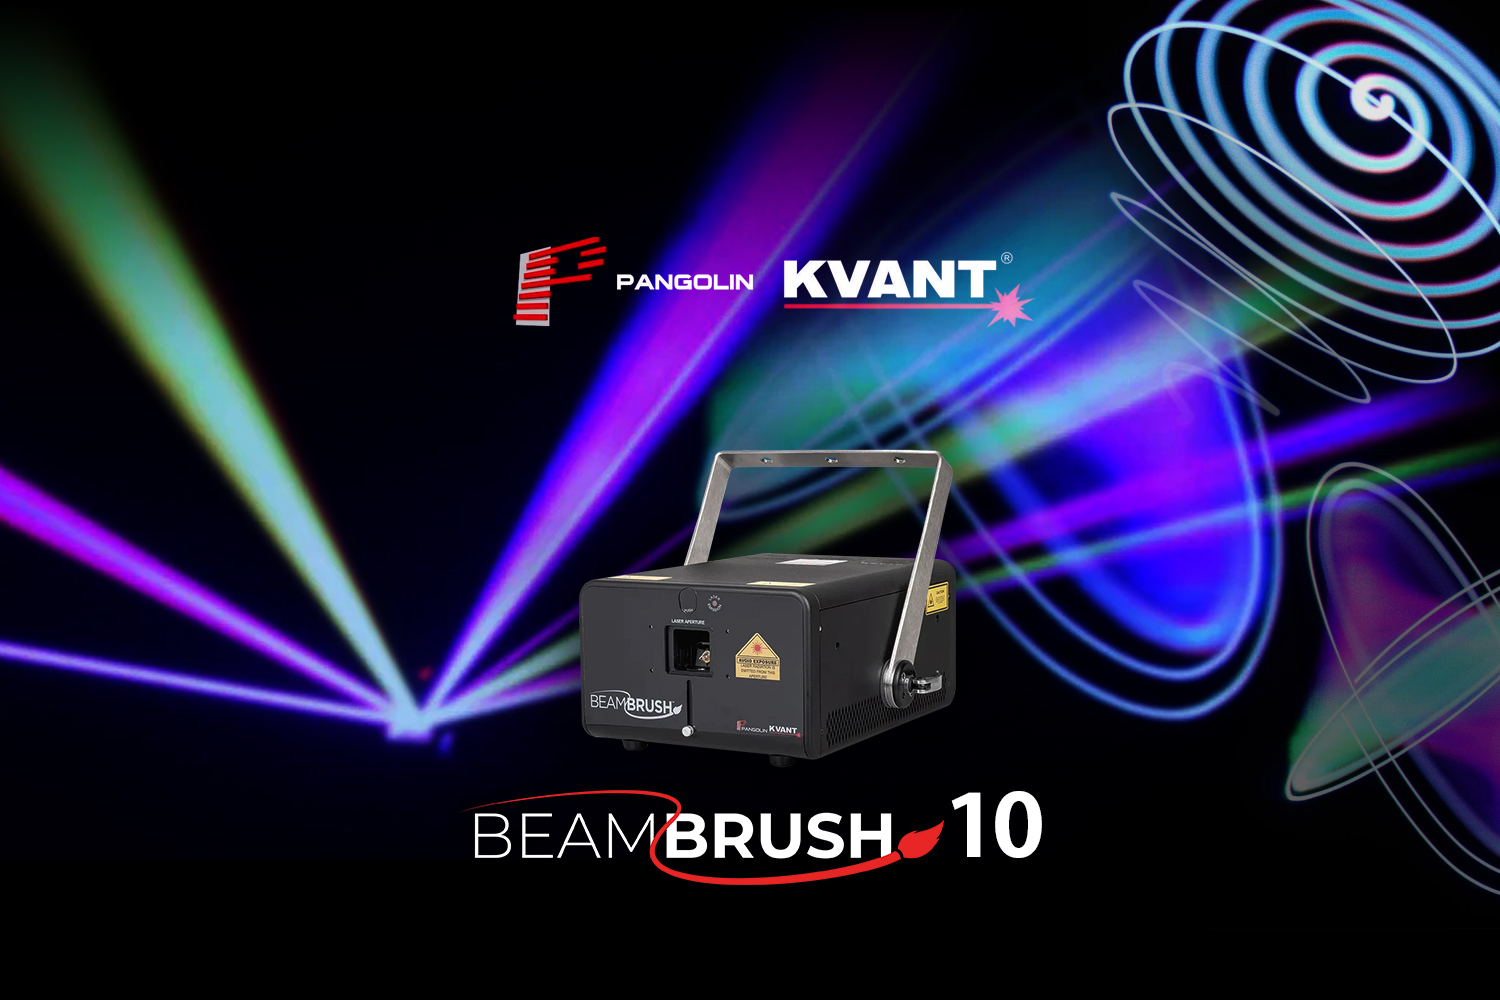 Beam Brush 10